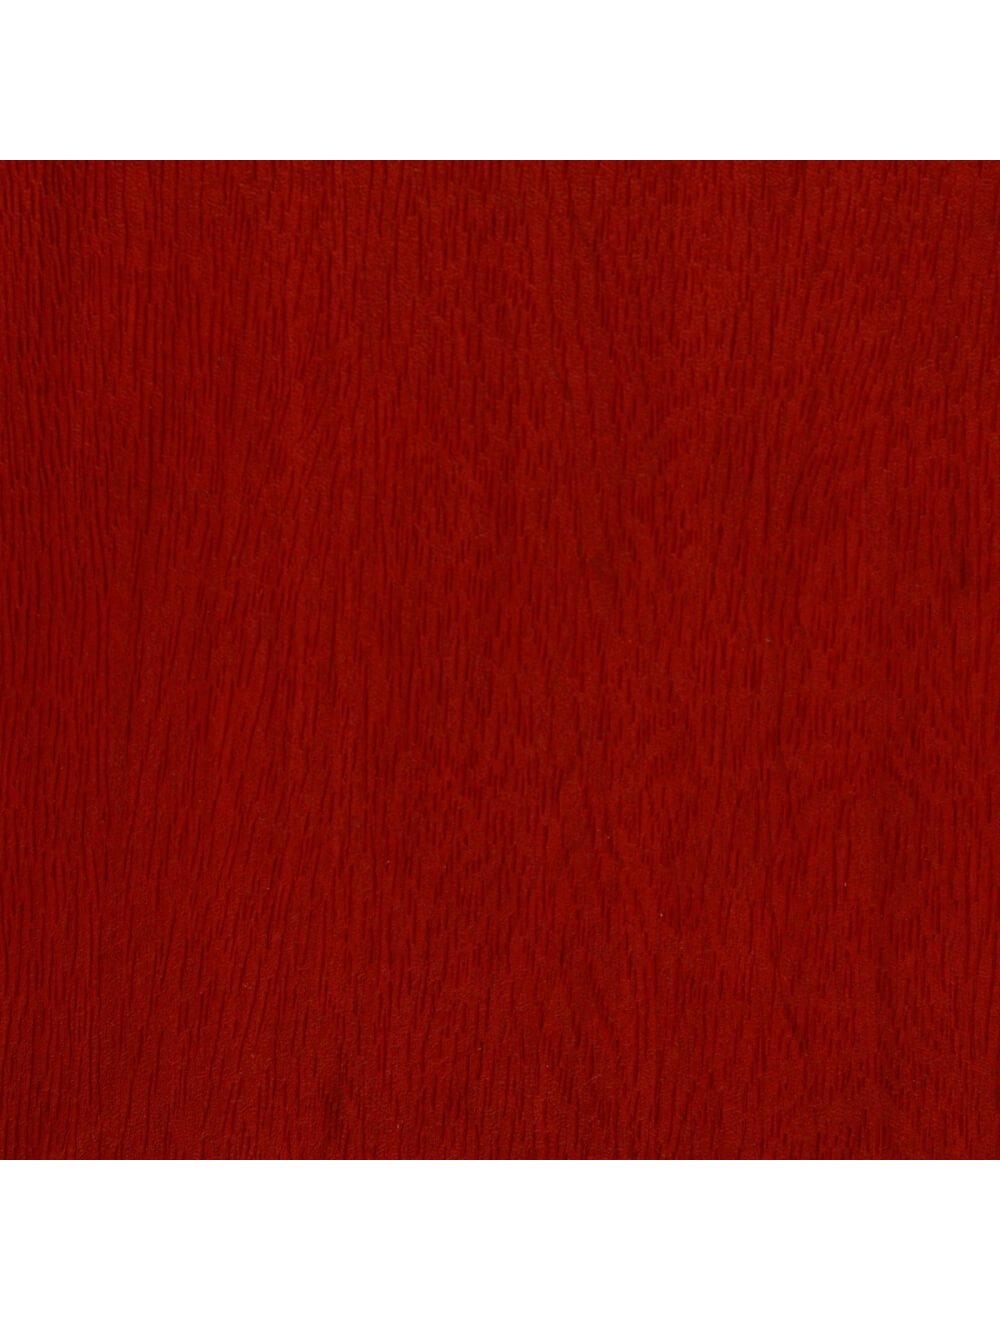 Amostra de material granulado de madeira vermelho Washington (E948)